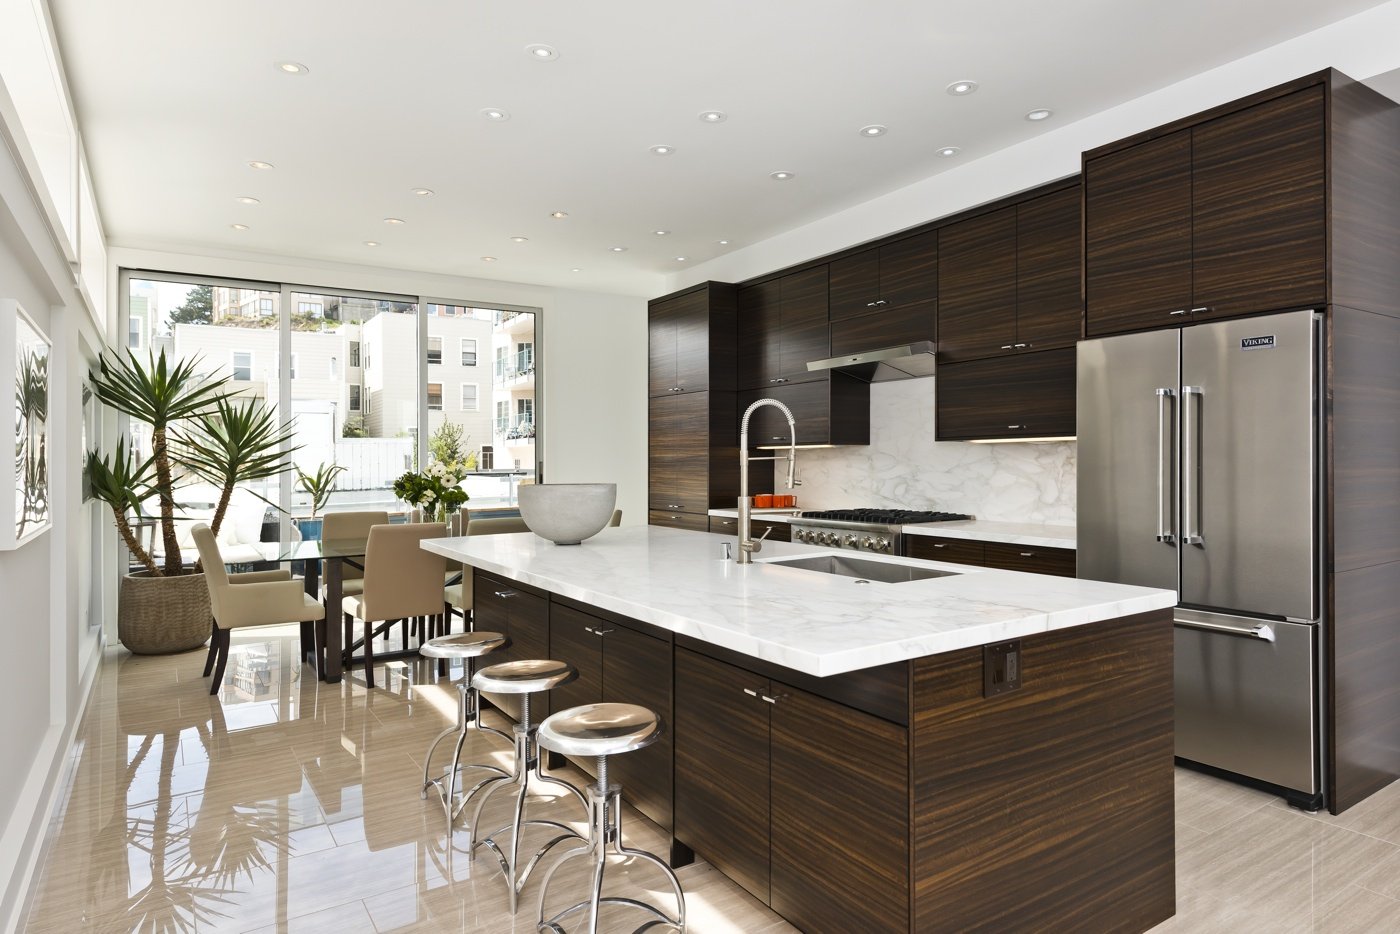 Большая кухня: дизайн угловой и квадратной кухни в частном доме, фото ремонта в квартире, как обустроить и выбрать обои